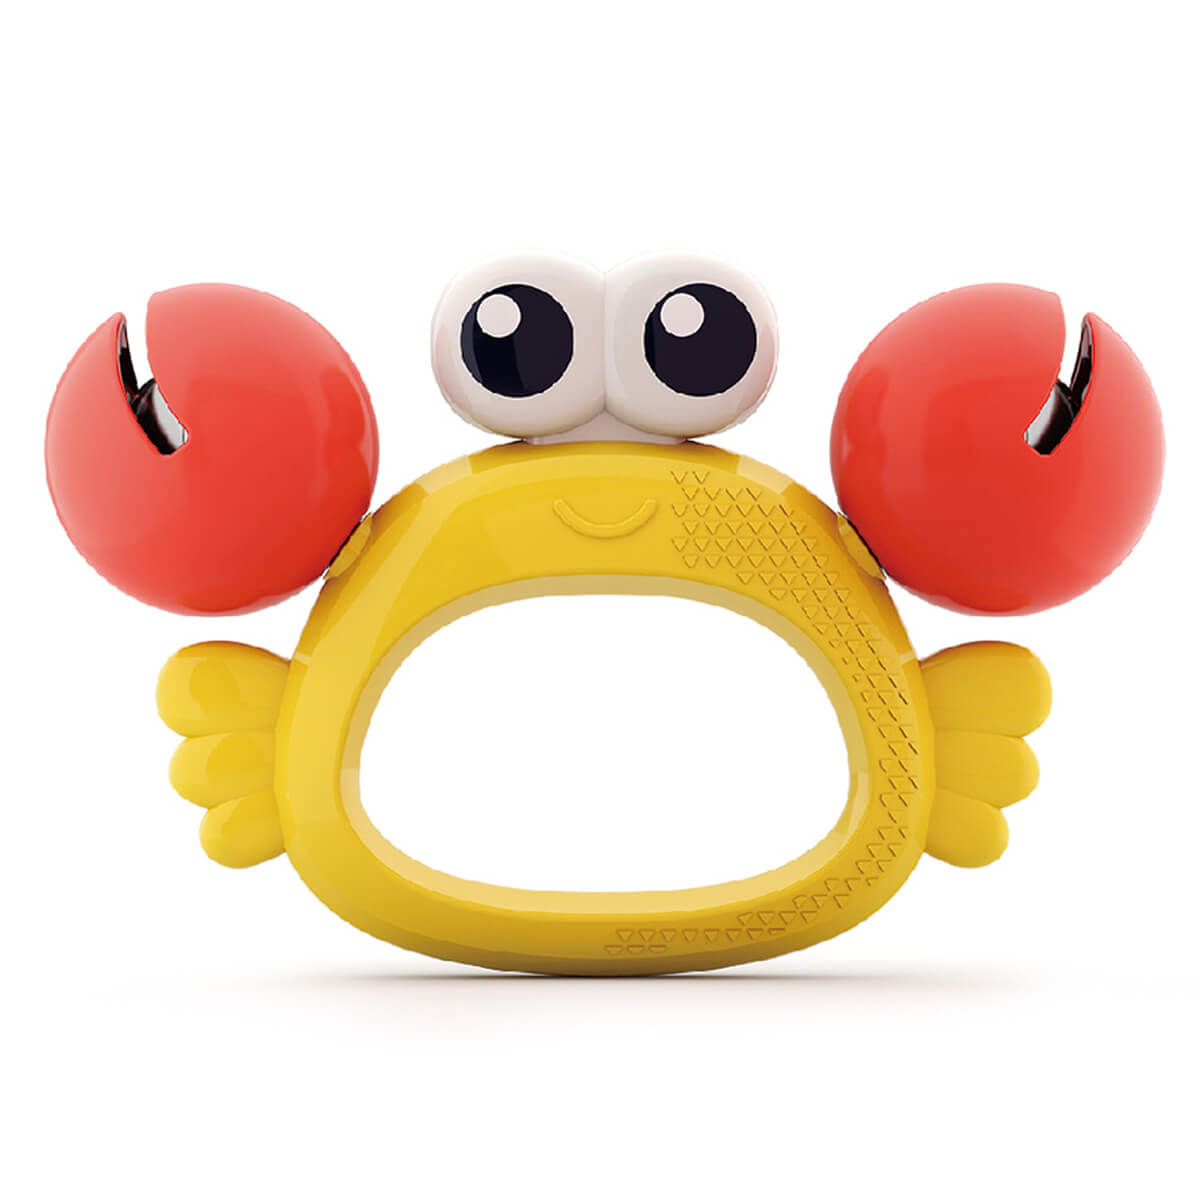 נשכן הולה טויס תזמורת בעלי חיים סרטן – Hola Toys Animal Orchestra Rattle Crab